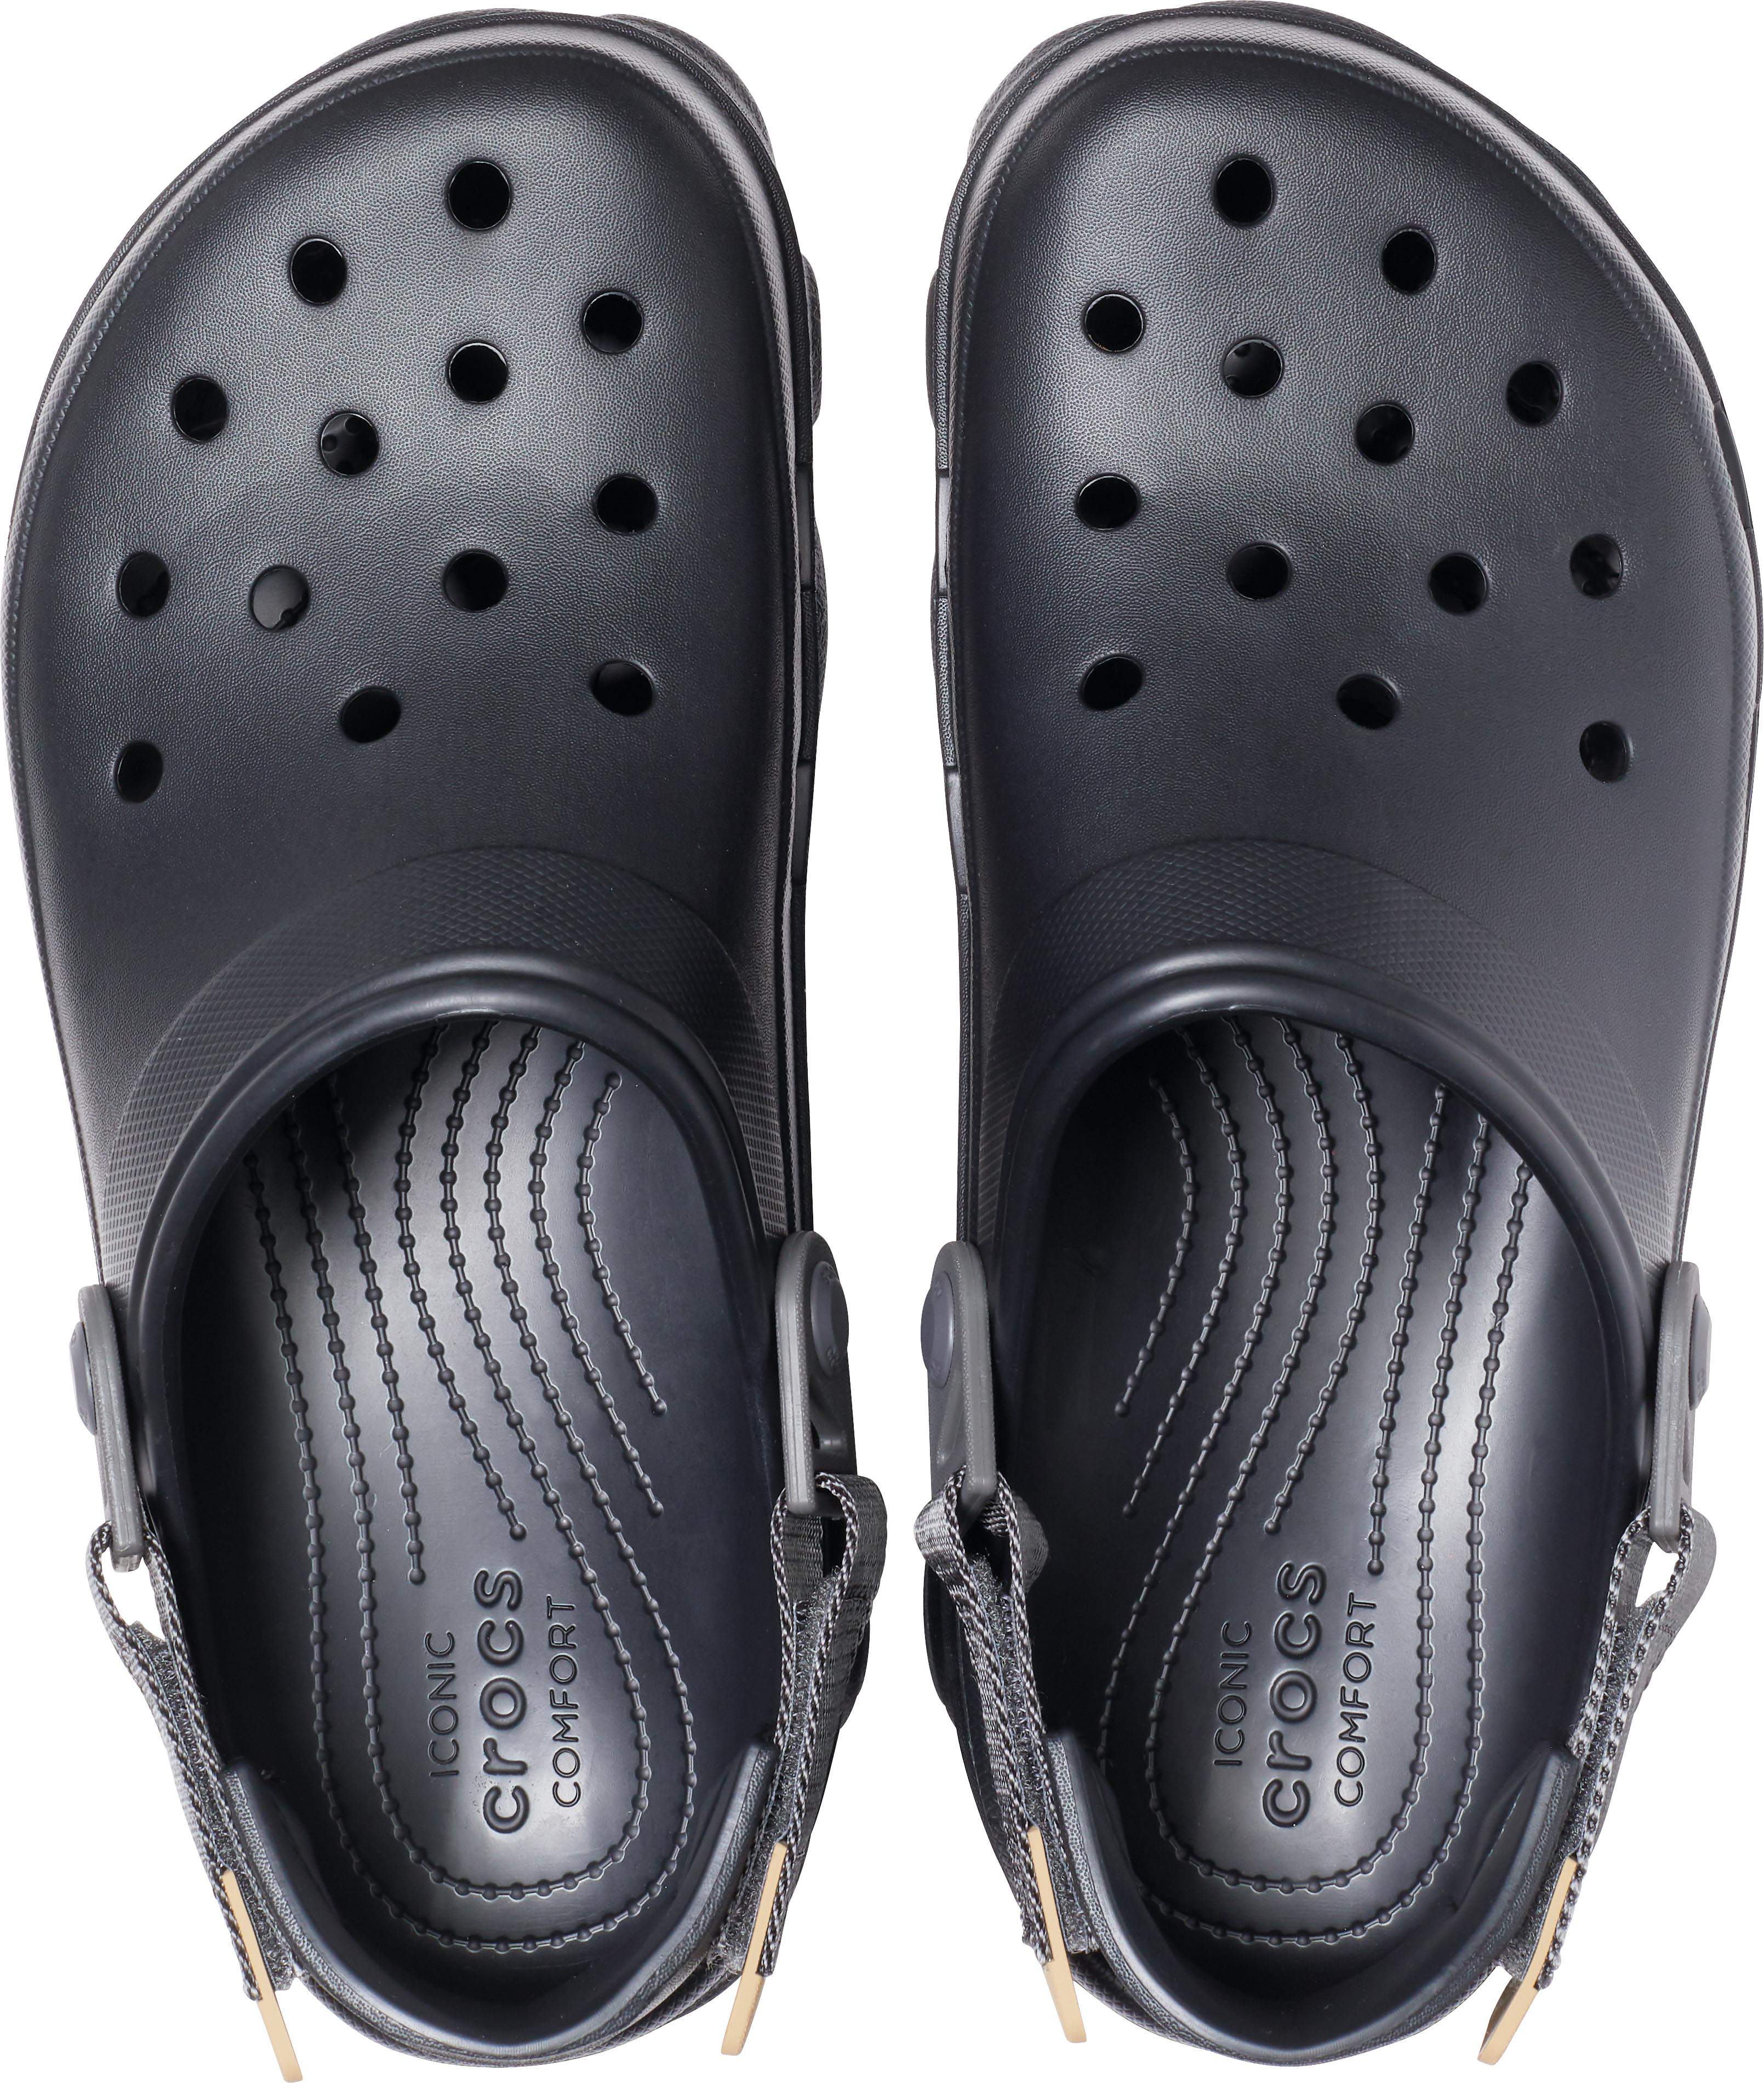 crocs comfy shoes